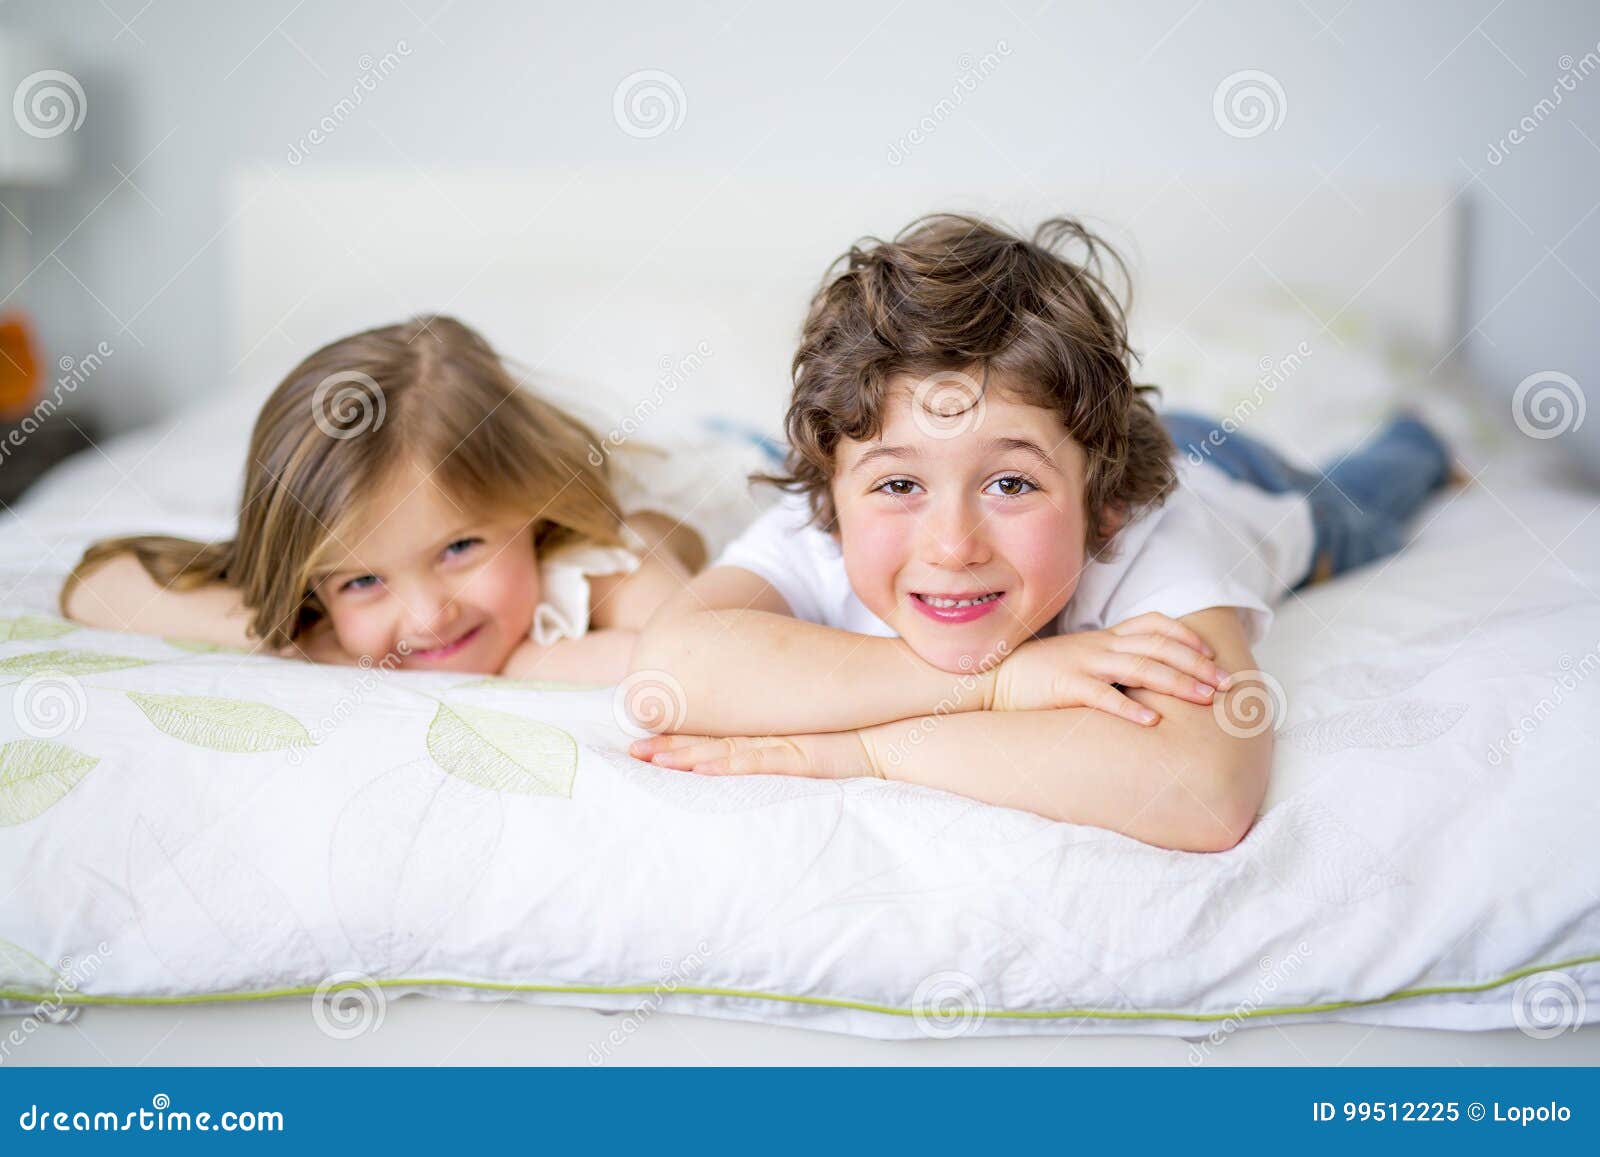 Спал с сестрой друга. Брат и сестра в кровати. Брат и сестренка в постели. С младшим братом в постельке. Сестры в пижамах кровать.